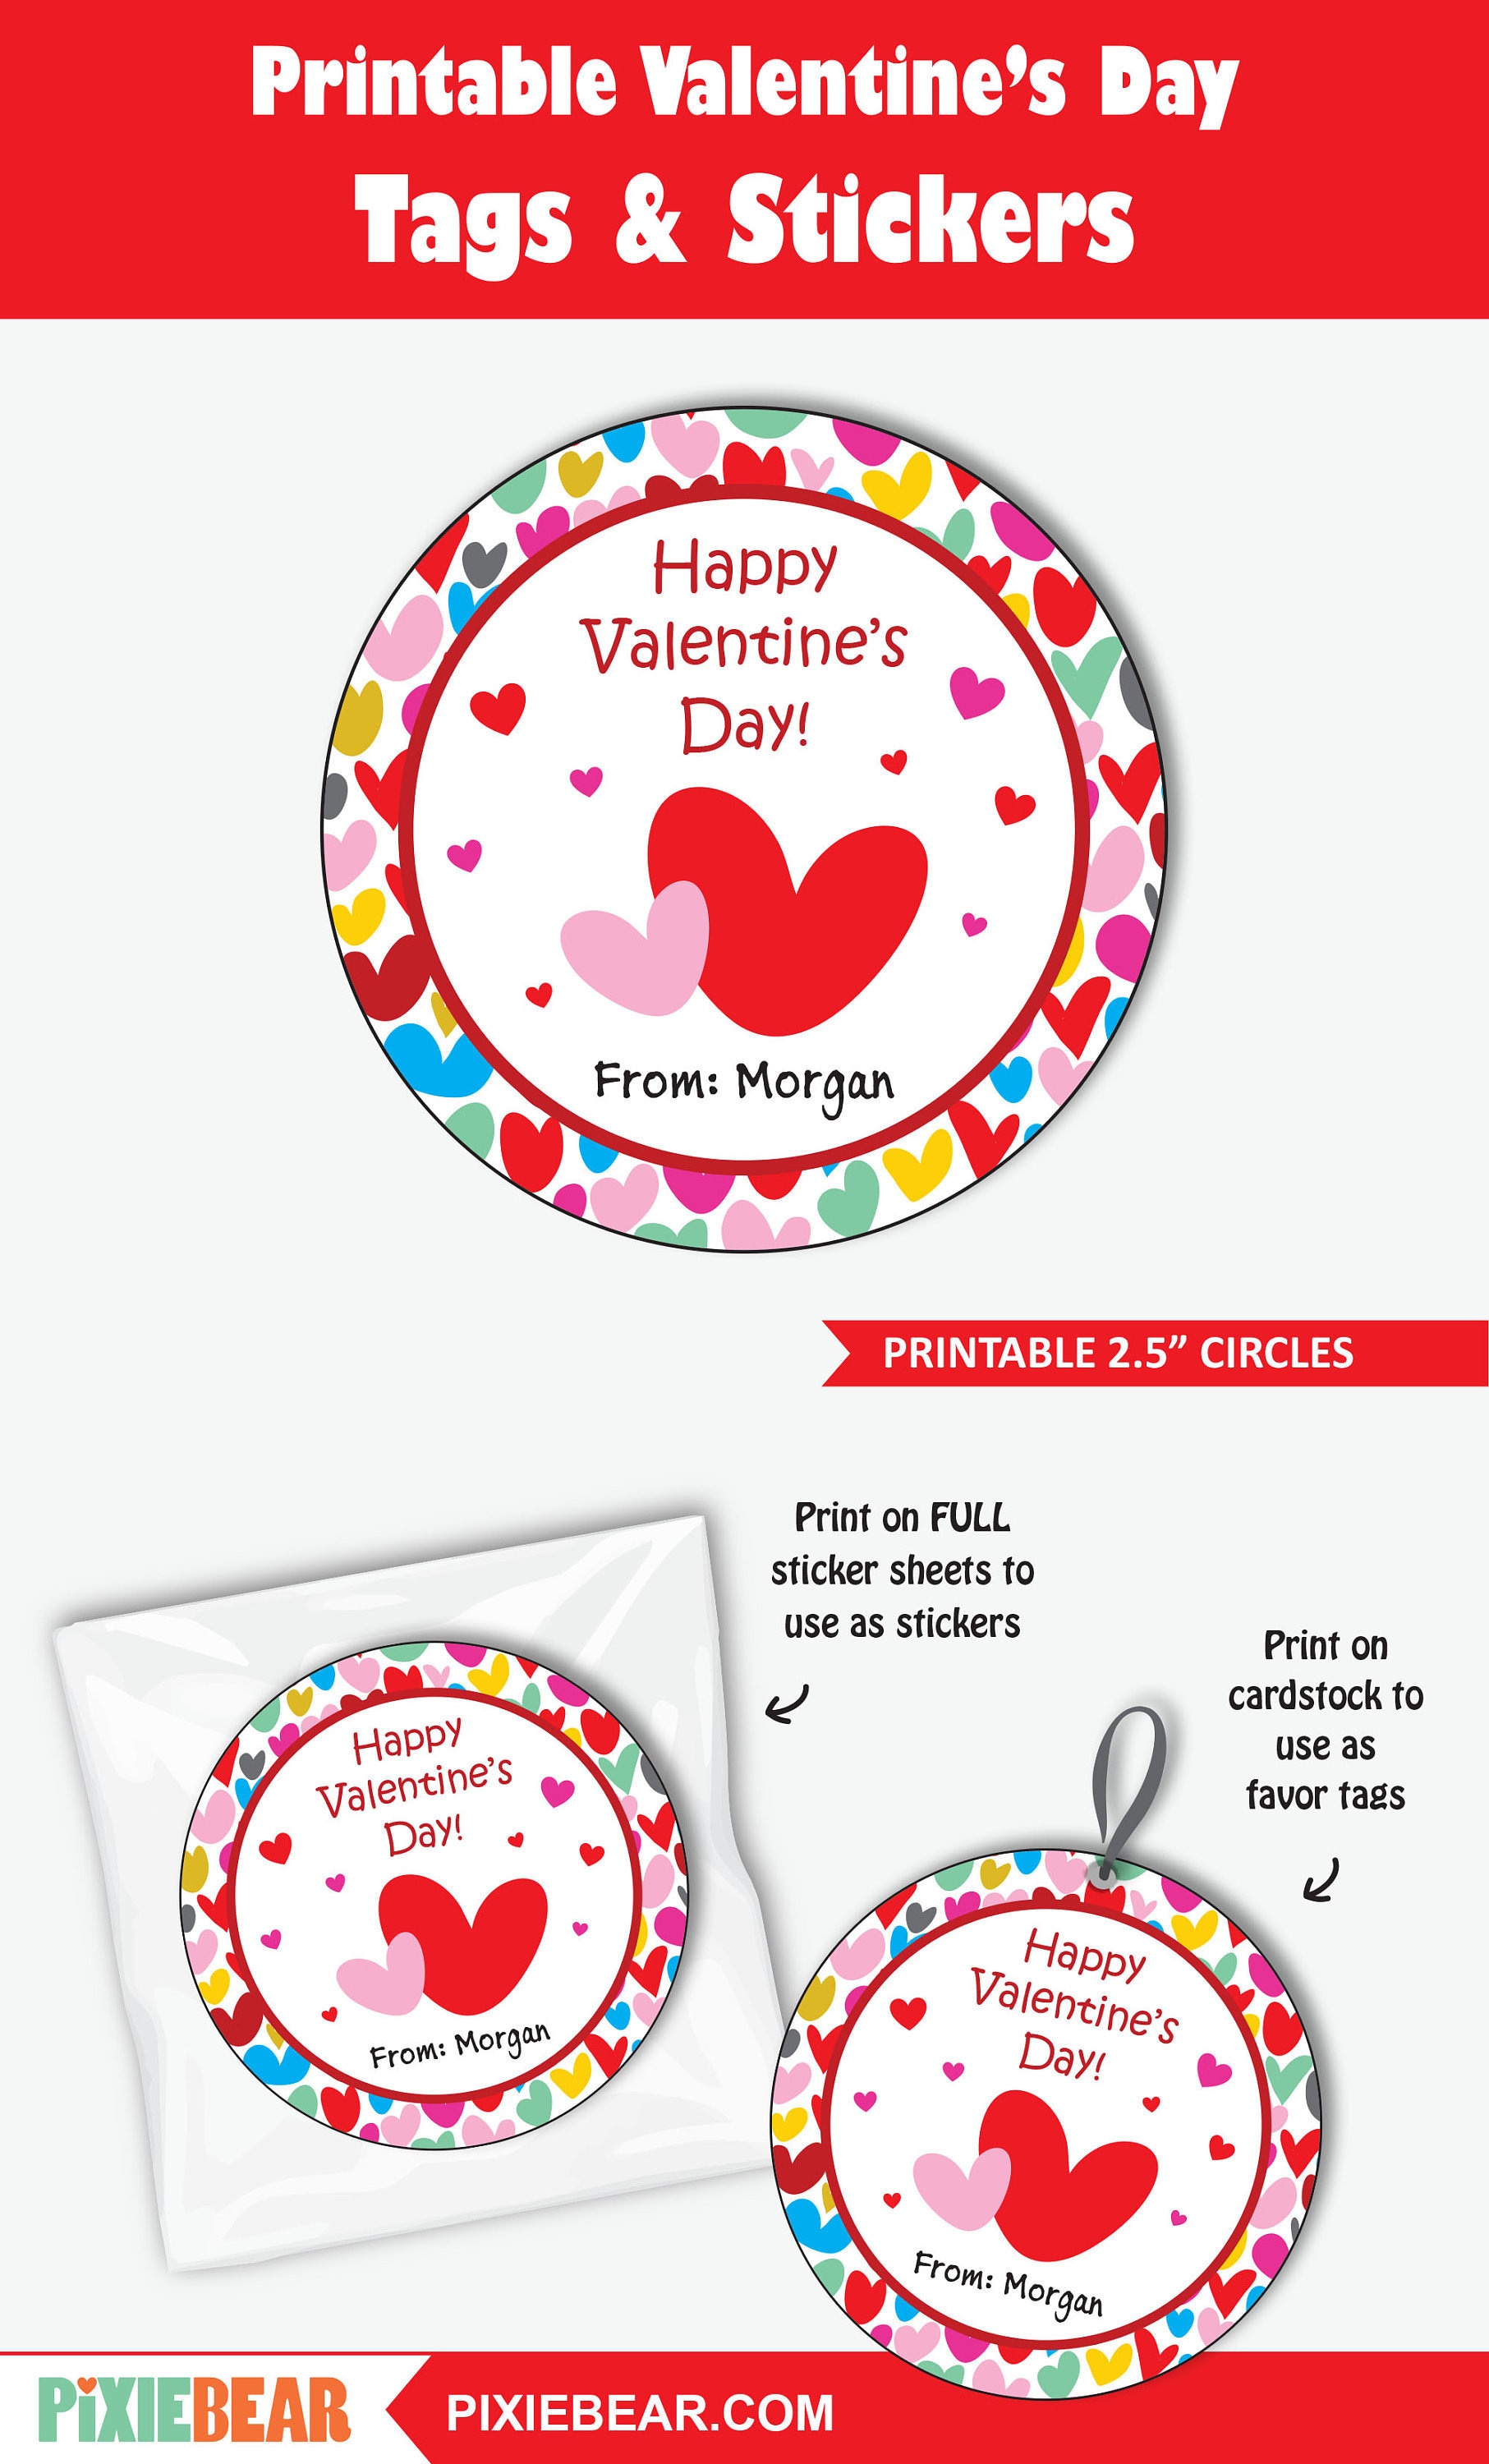 Kids Valentine Favor Stickers, School Valentine, Valentine Treat Box Gift  Stickers for Kids, Classroom Valentine, Red Heart Valentine Favor 